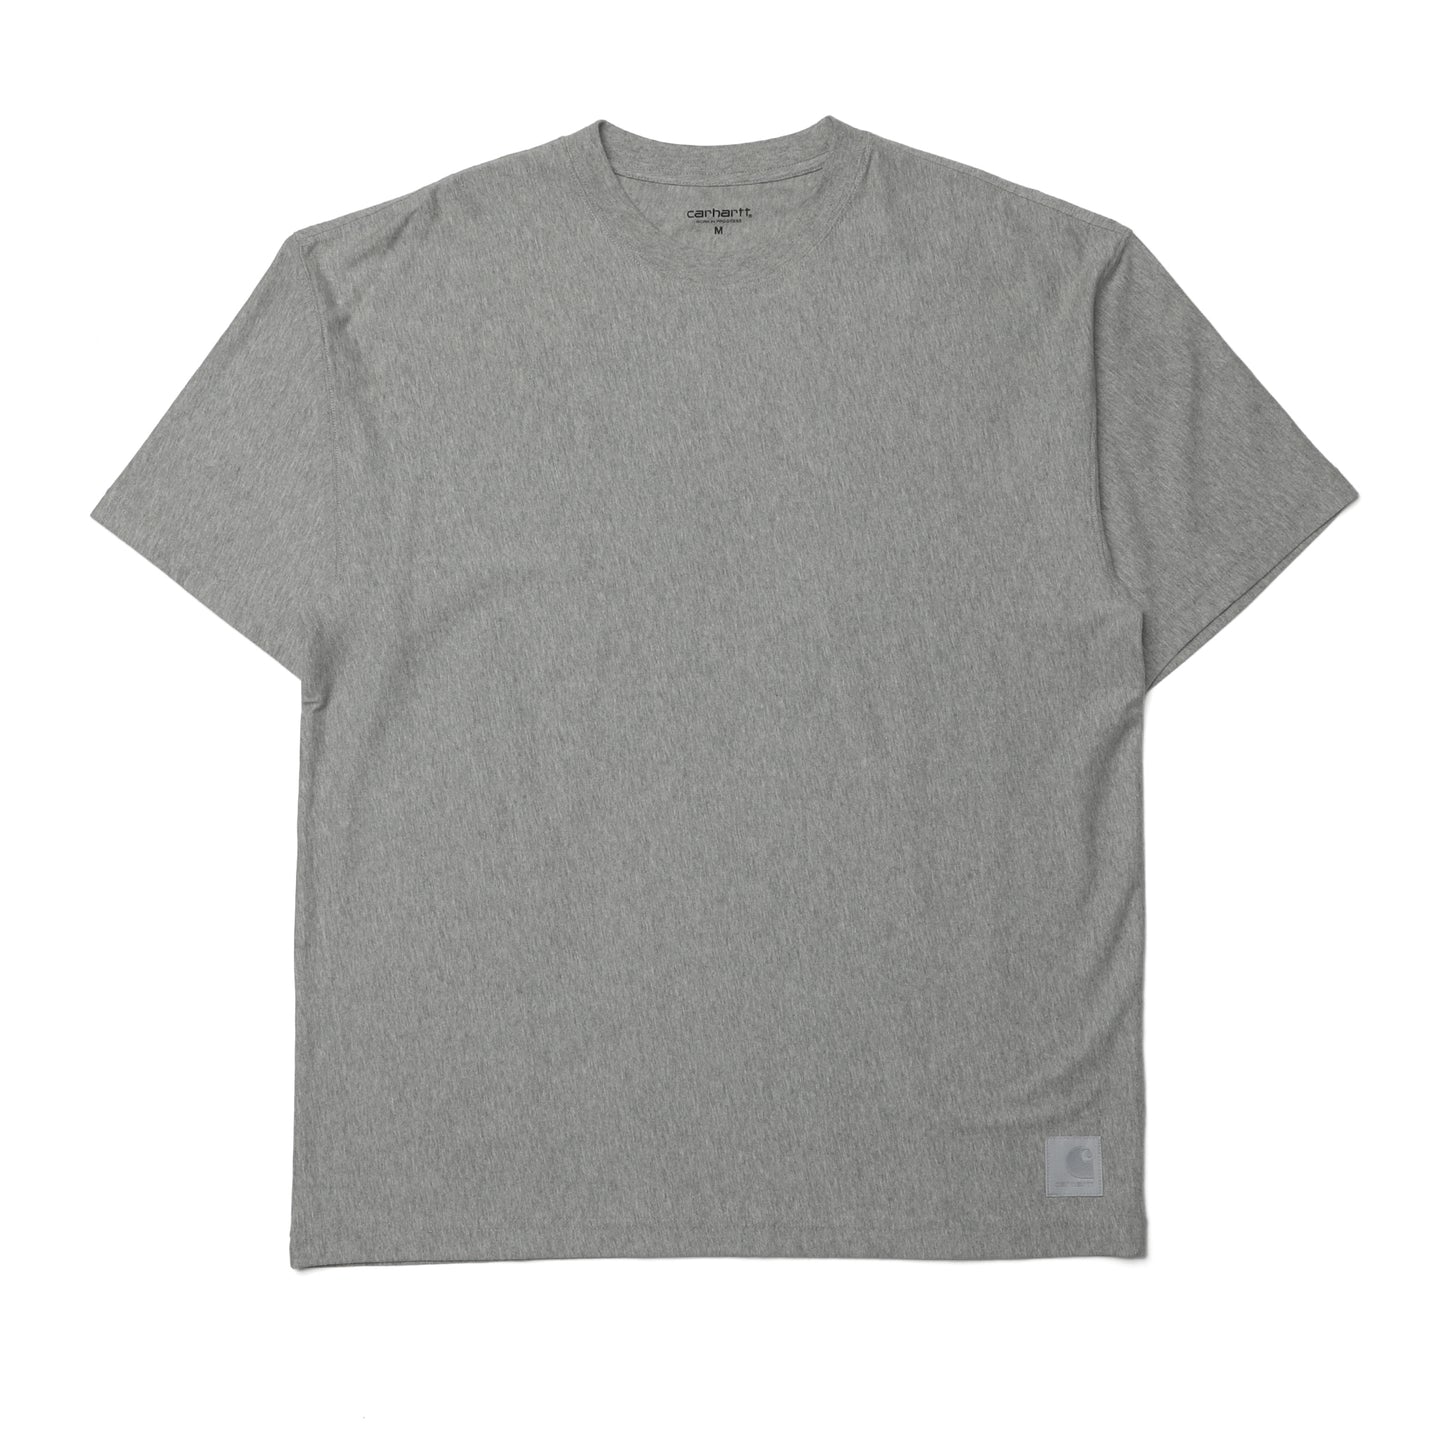 Carhartt WIP Dawson T-Shirt Grey Heather